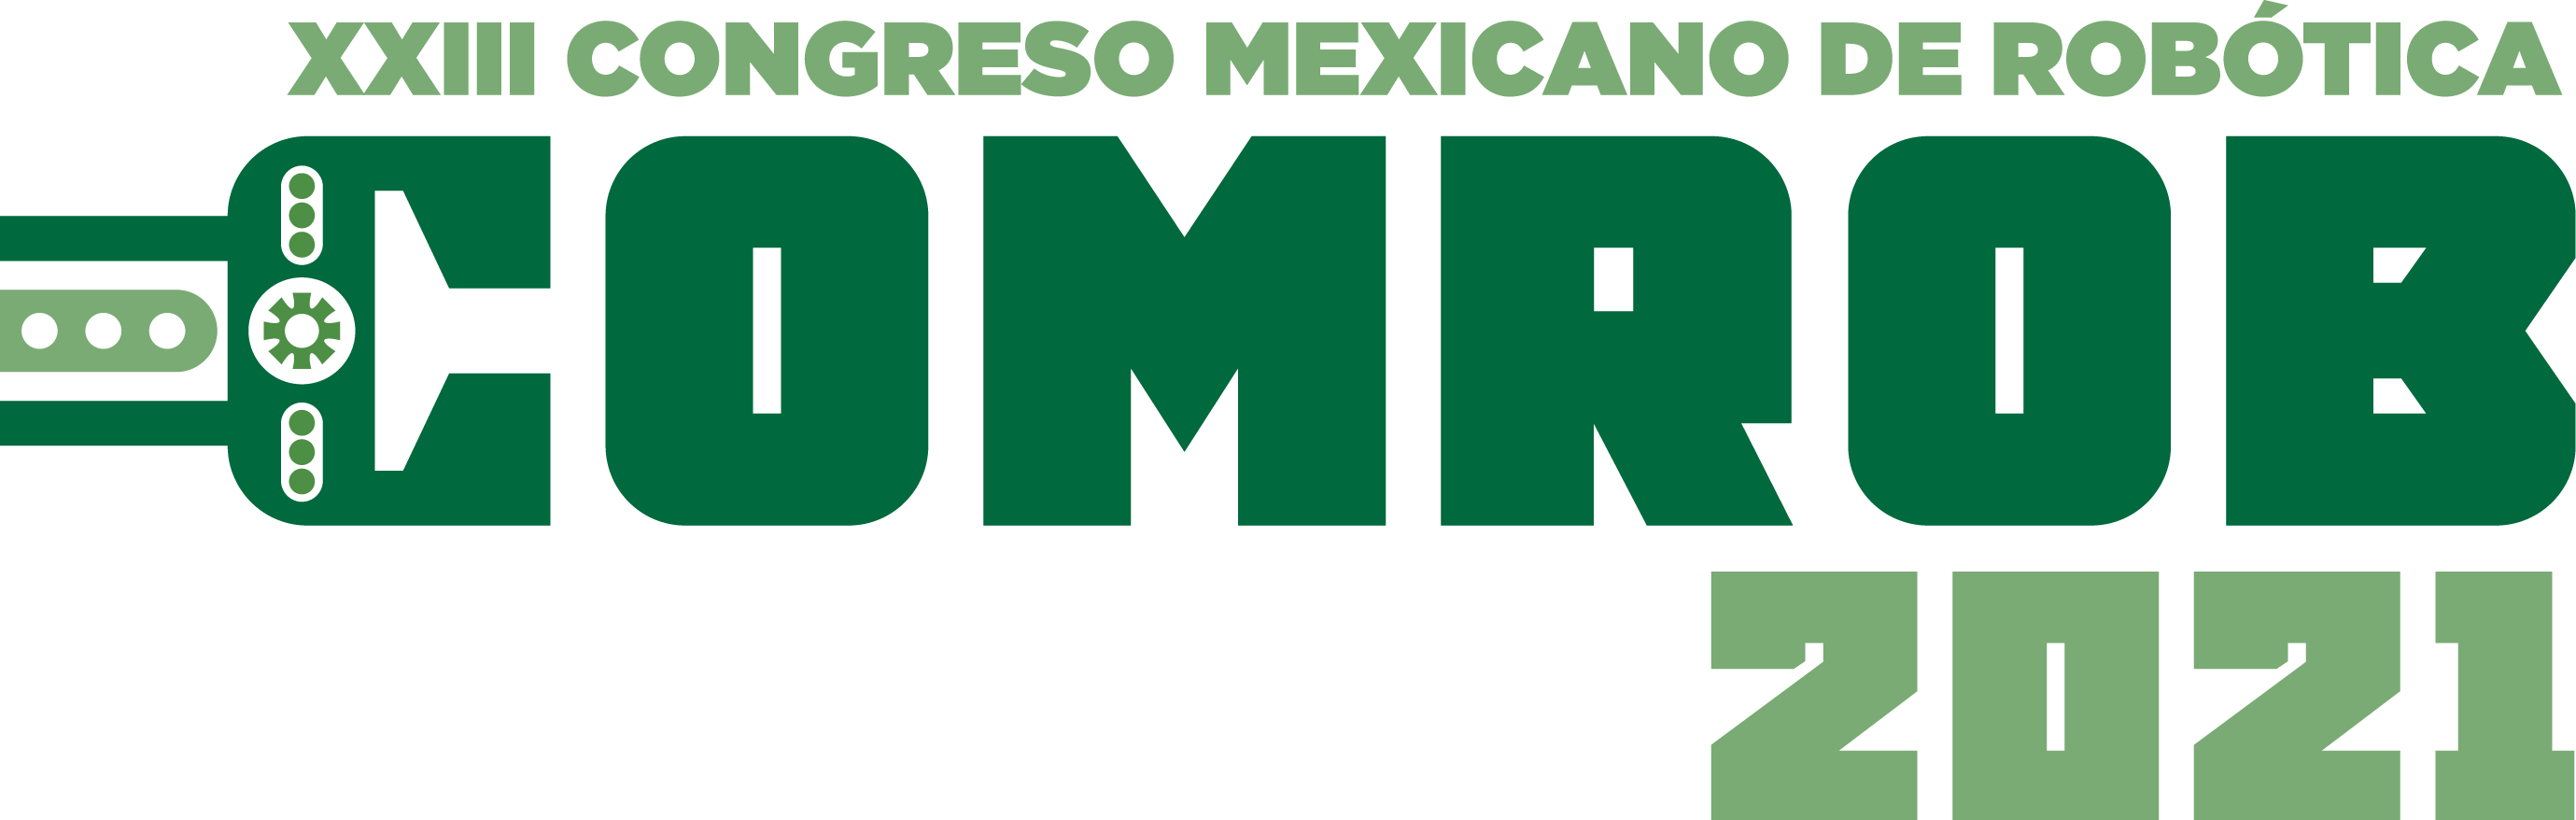 XXIII Congreso Mexicano de Robótica COMROB 2021